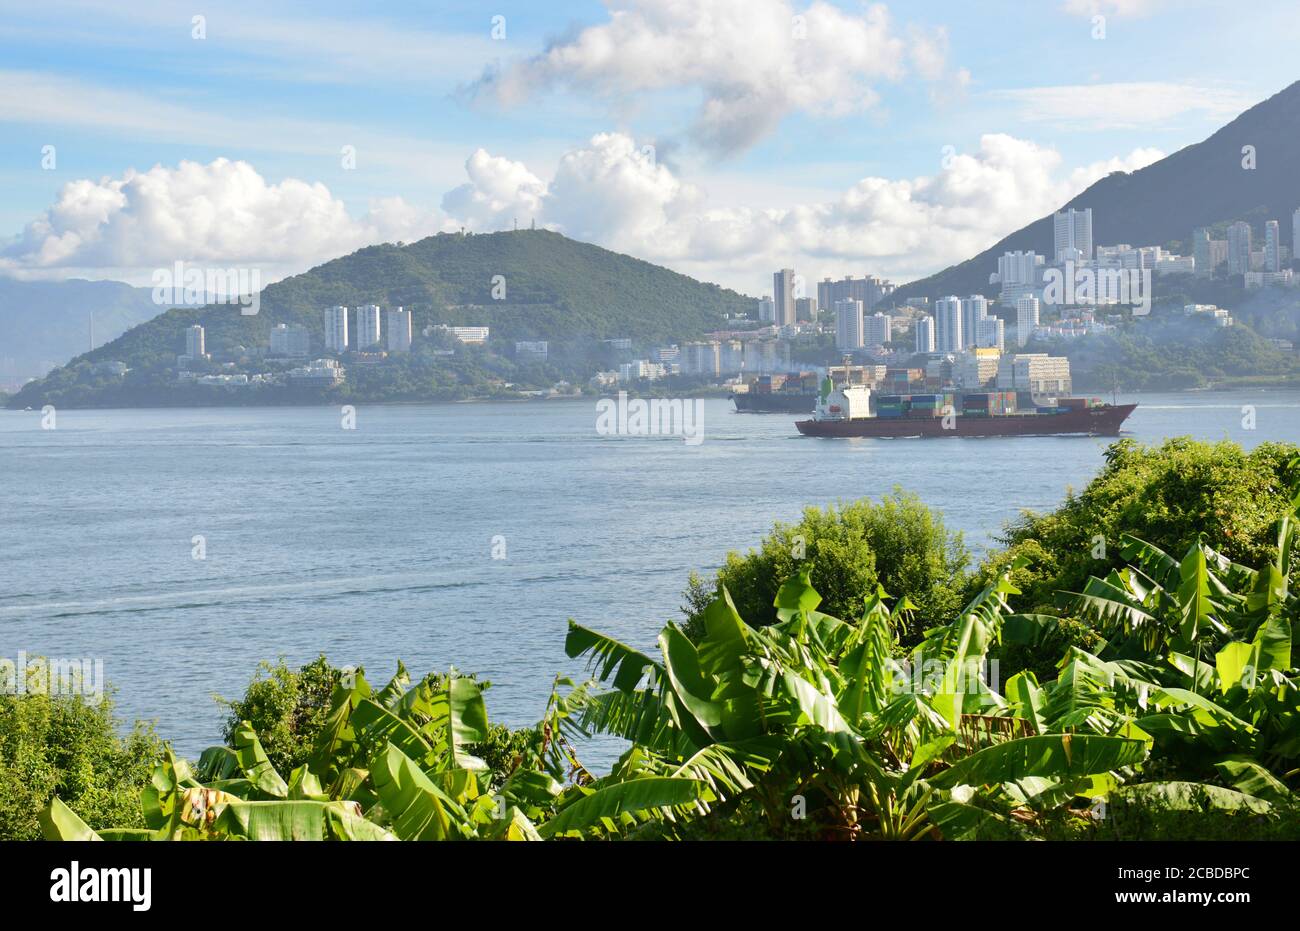 Vista sul lato sud dell'isola di Hong Kong vista dall'isola di Lamma. Foto Stock